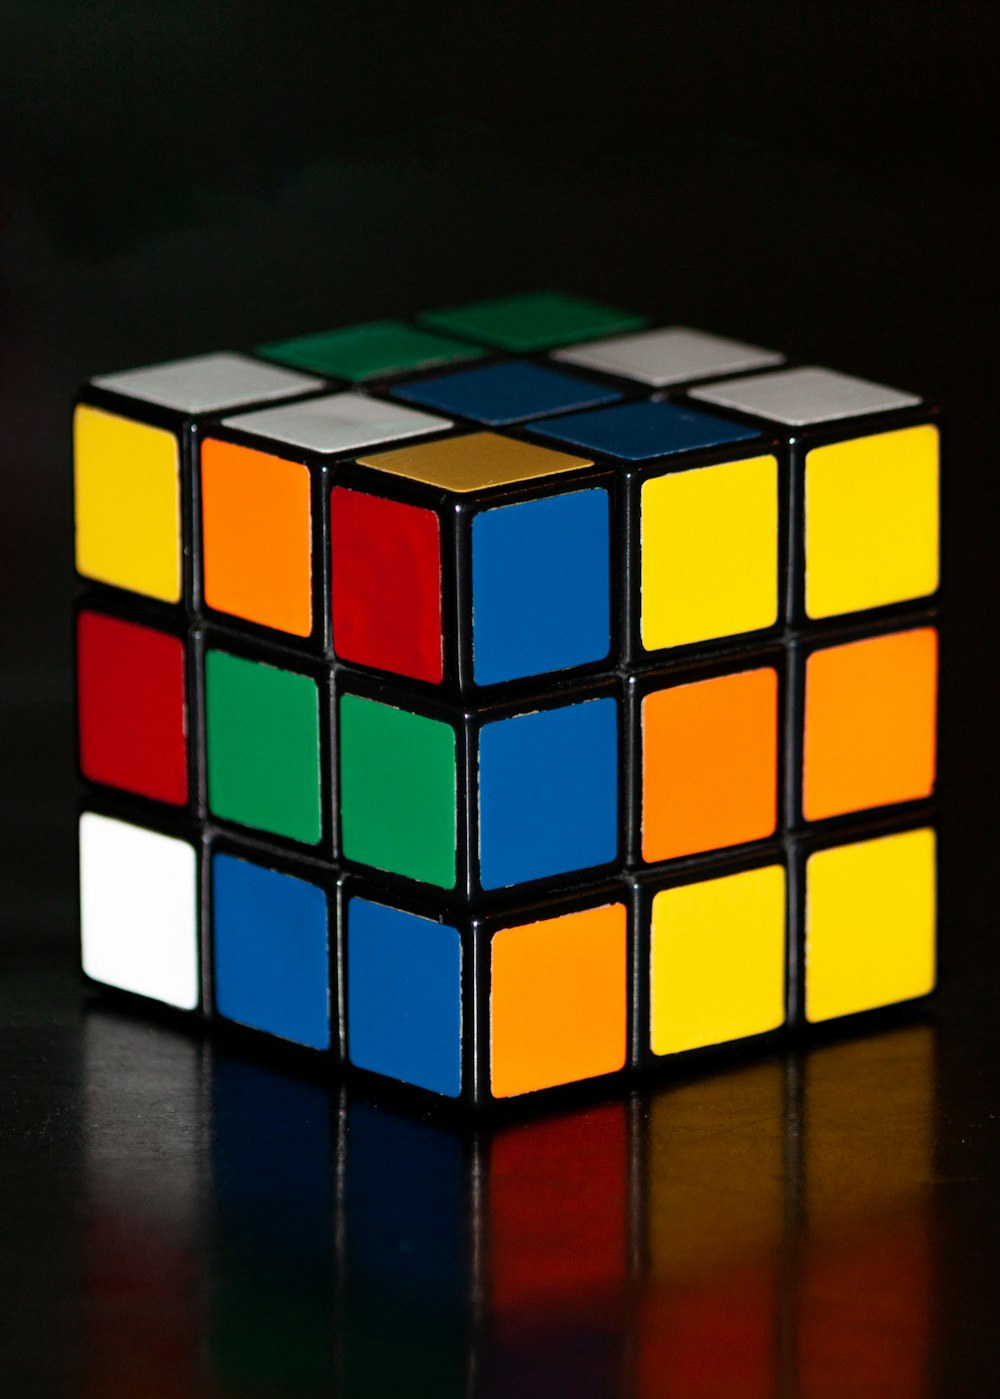 3 x 3 Rubik’s Cube sur surface noire